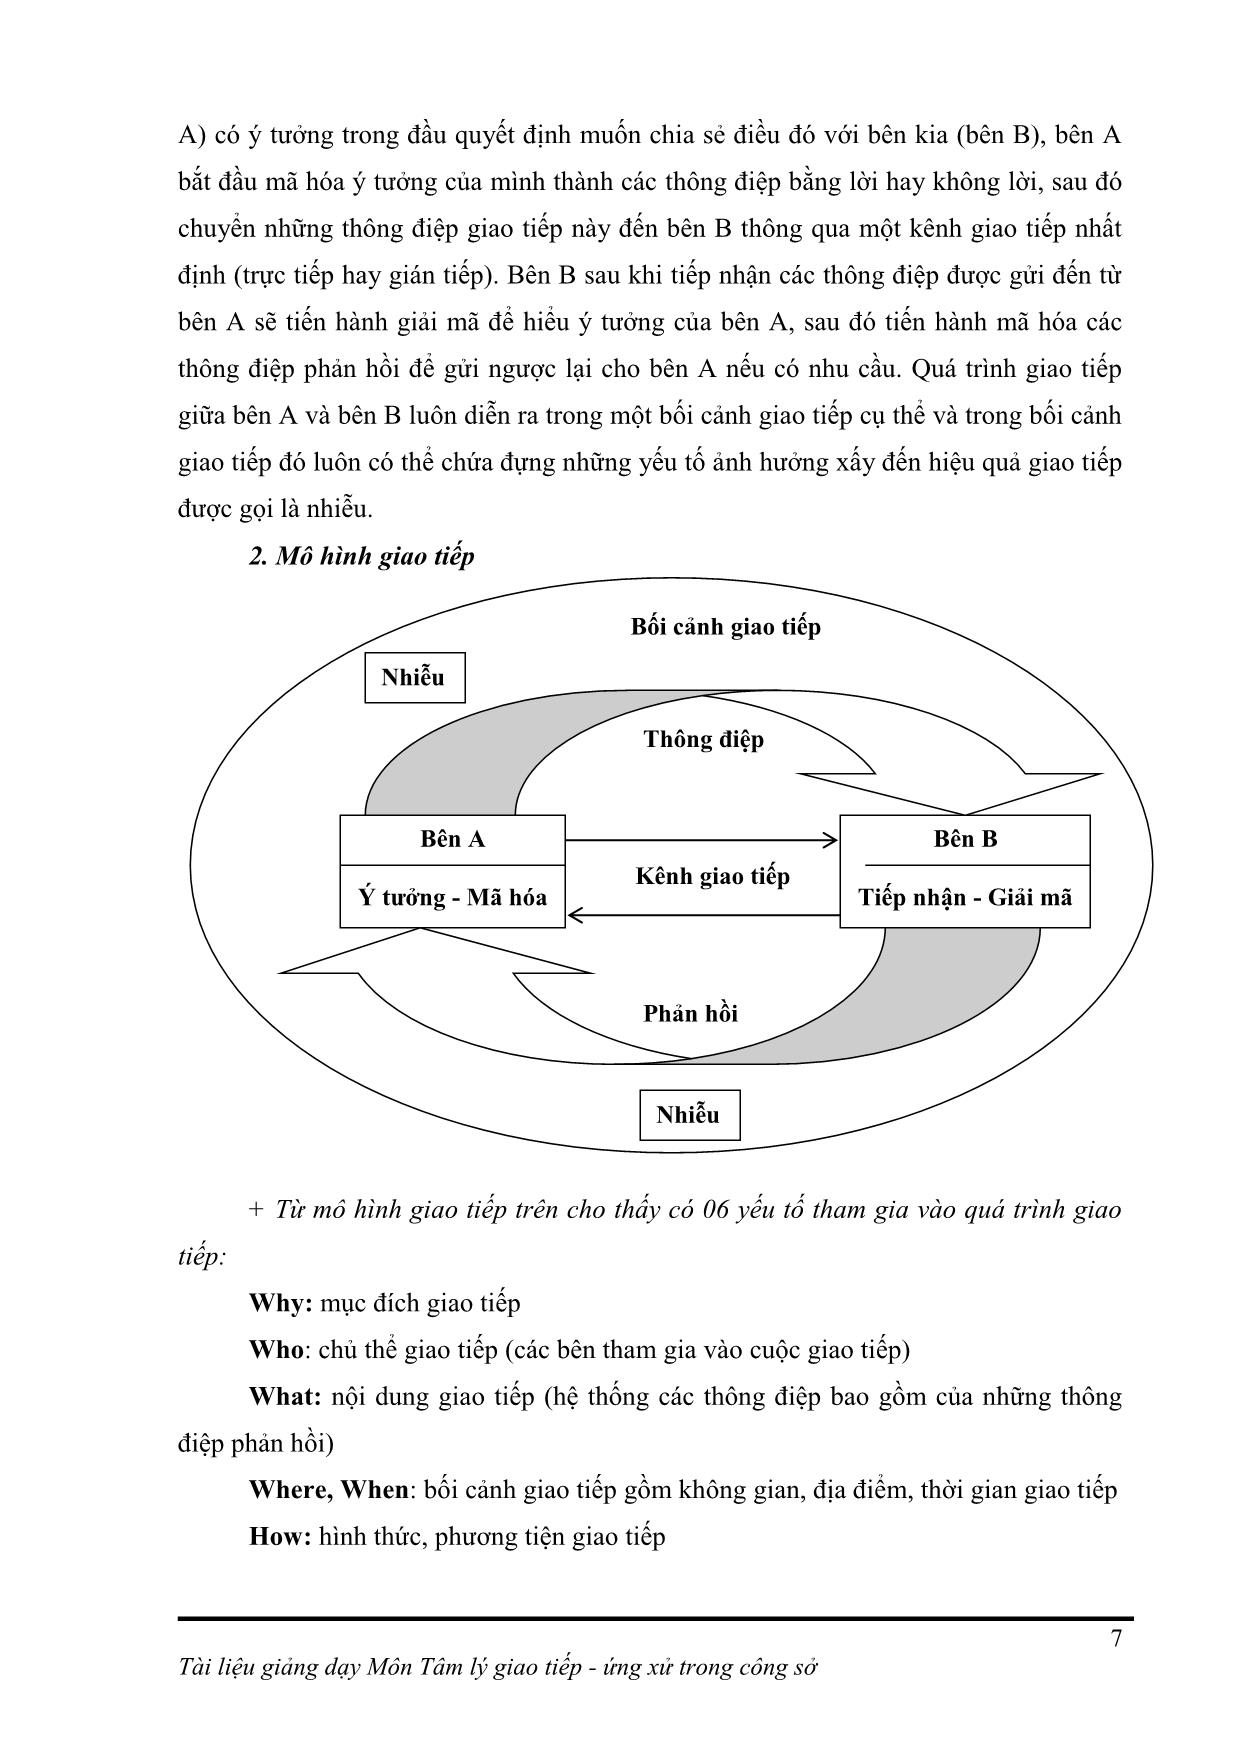 Giáo trình Môn tâm lý giao tiếp - Ứng xử trong công sở trang 7